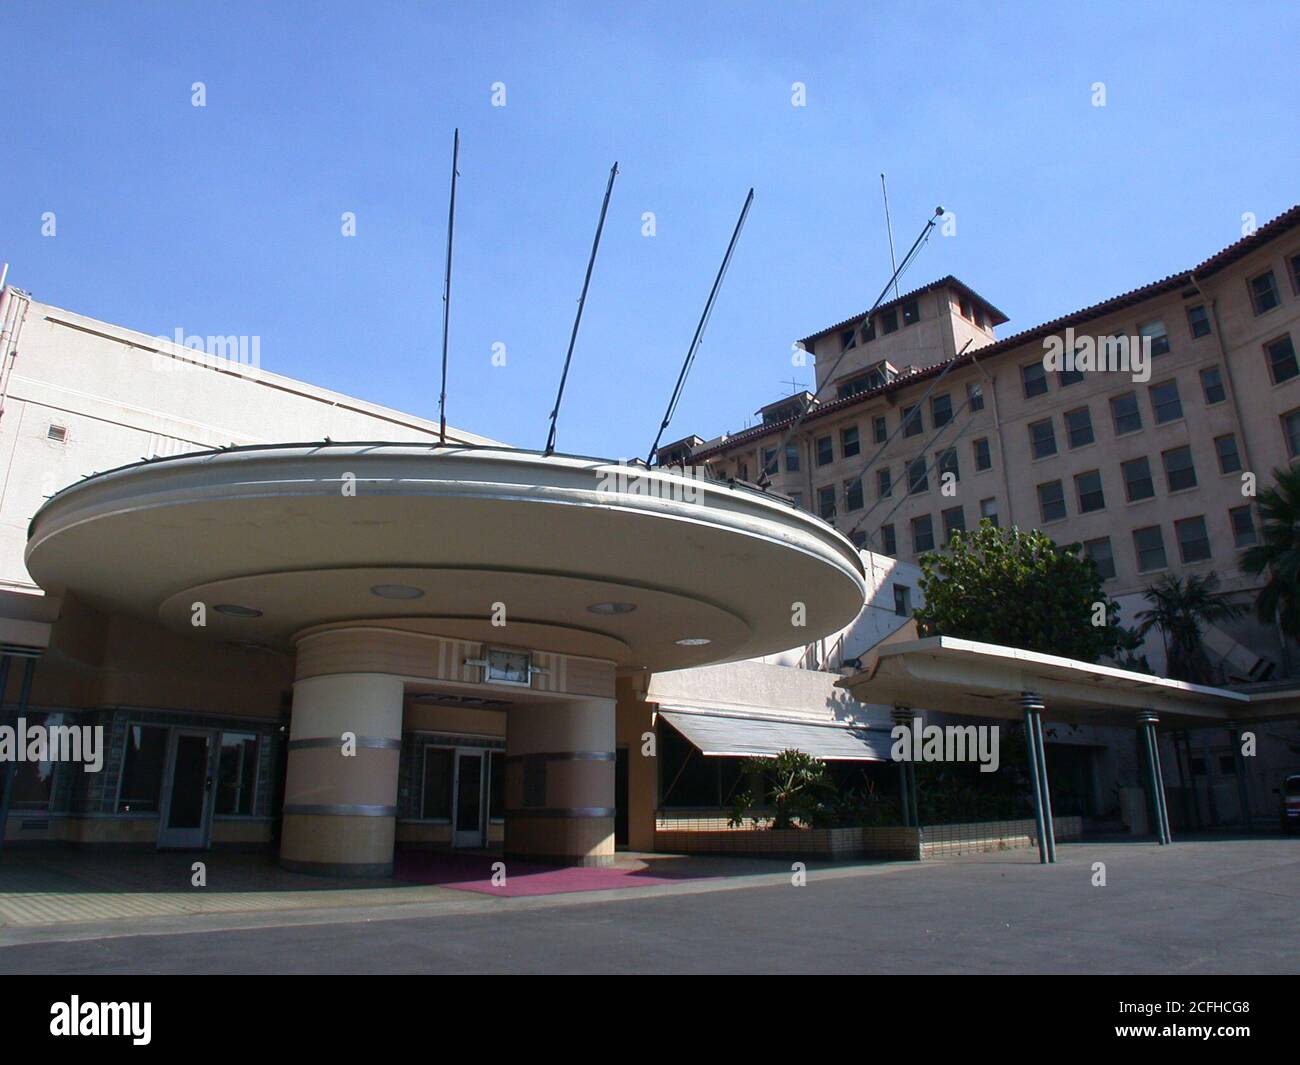 Los Angeles, Californie, États-Unis - septembre 2002 : vue d'archives de l'entrée historique de l'hôtel Ambassador, près de Wilshire Blvd. Le bâtiment a été détruit en 2005. Banque D'Images